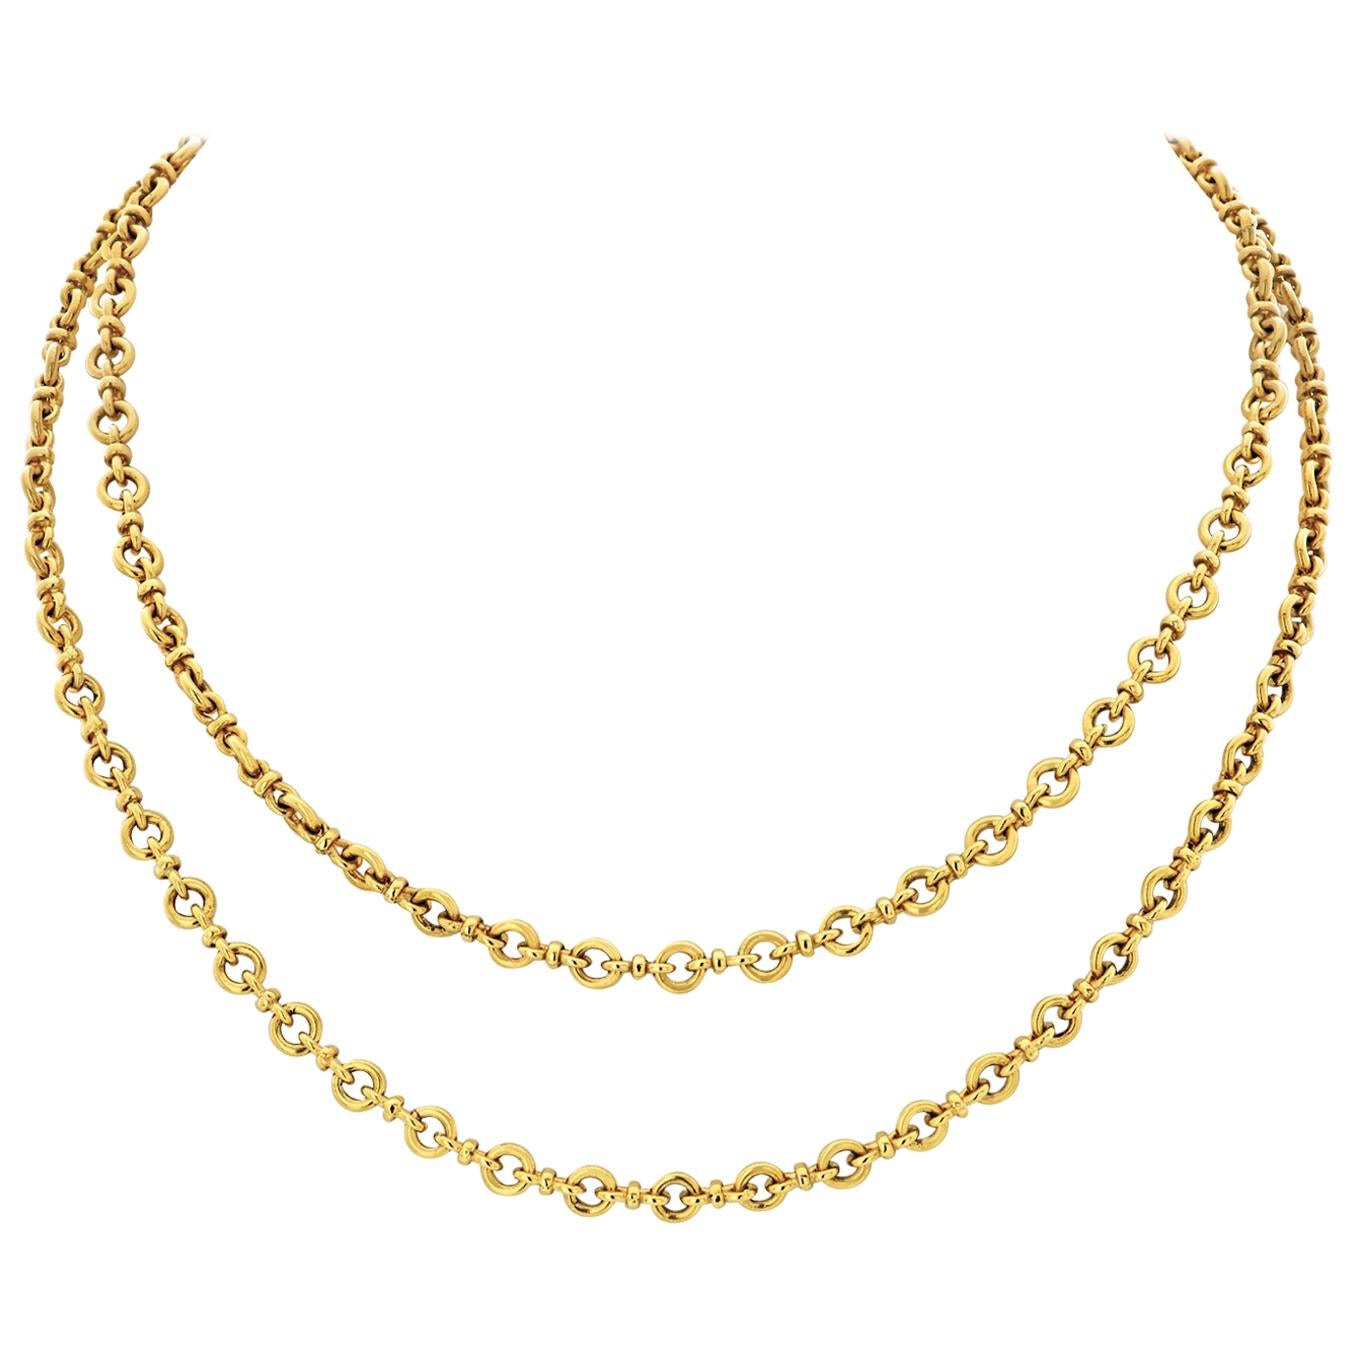 Van Cleef & Arpels 18 Karat Yellow Gold Link Chain Necklace